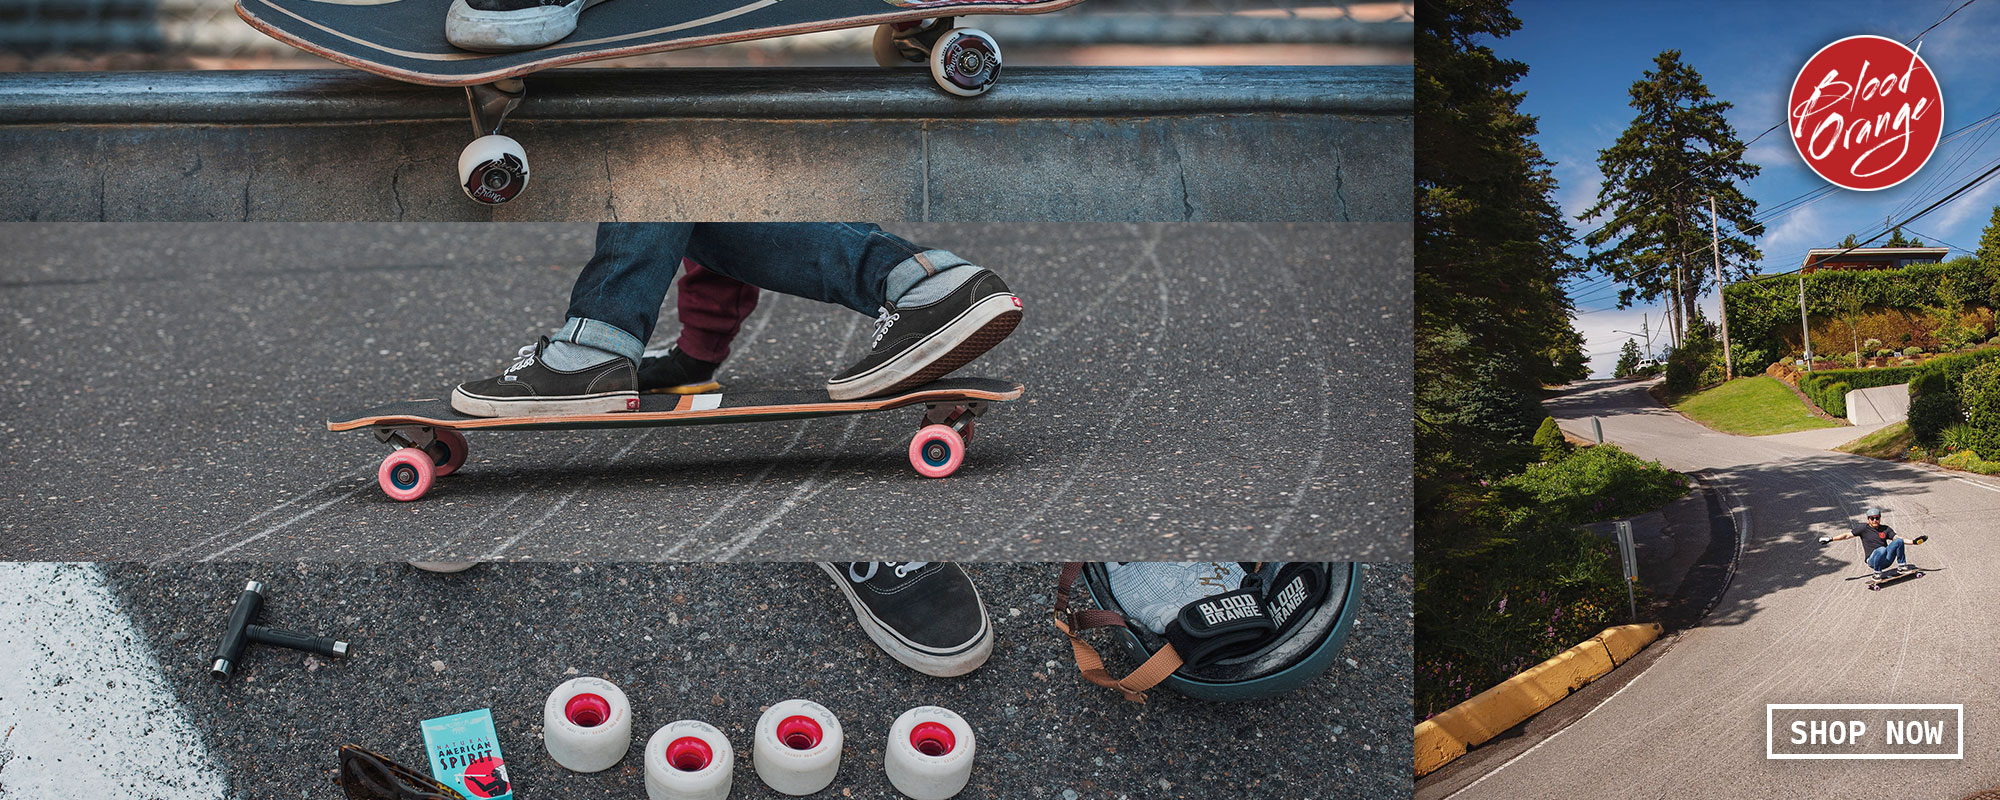 グッドふとんマーク取得 Crupie Wheels 54mm Carlos Ribeiro Square Skateboard Wheels 101a  with Bones